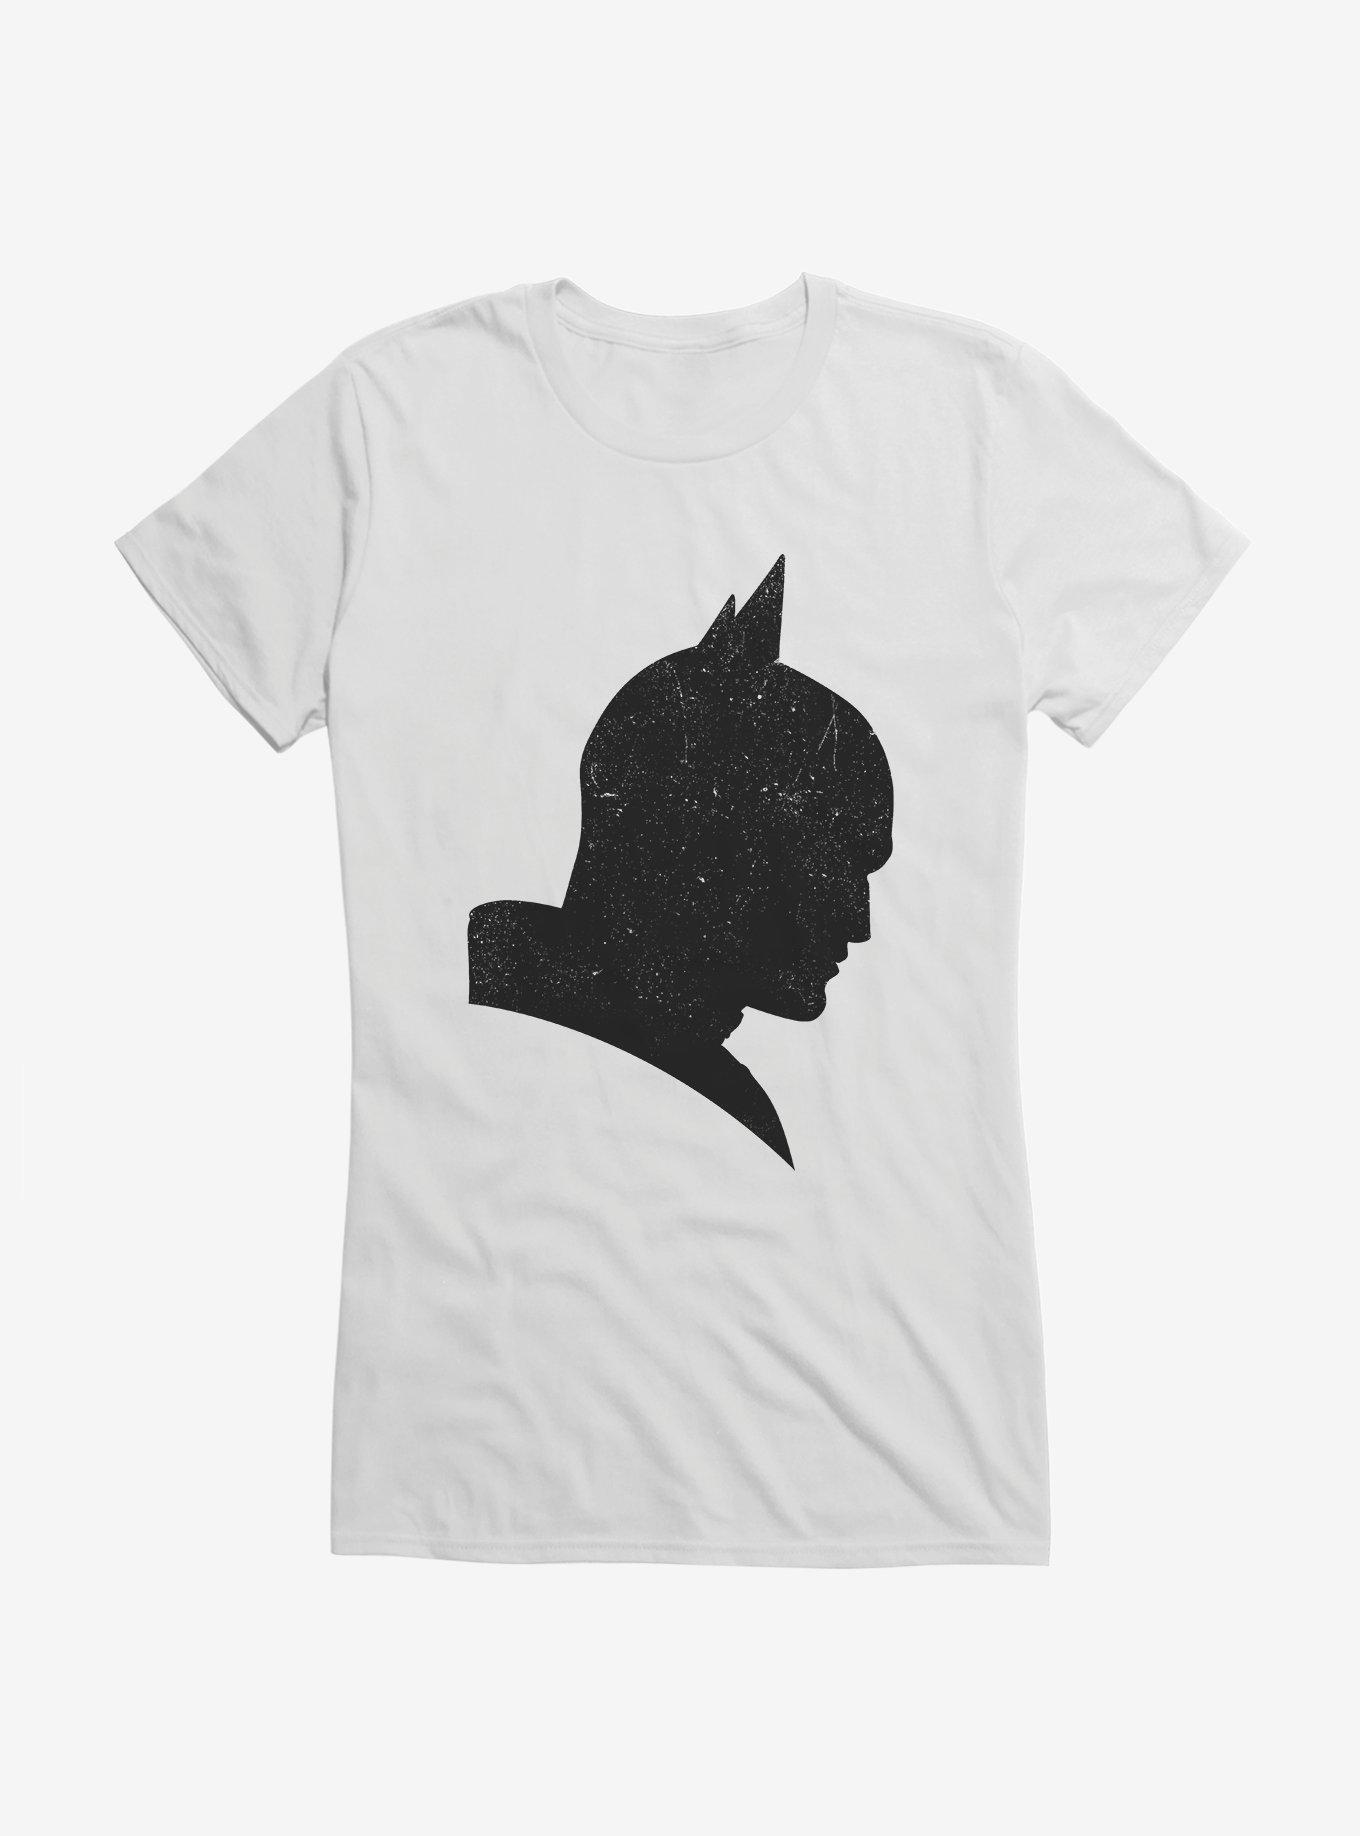 DC Comics The Batman Solid Shadow Girl's T-Shirt, , hi-res